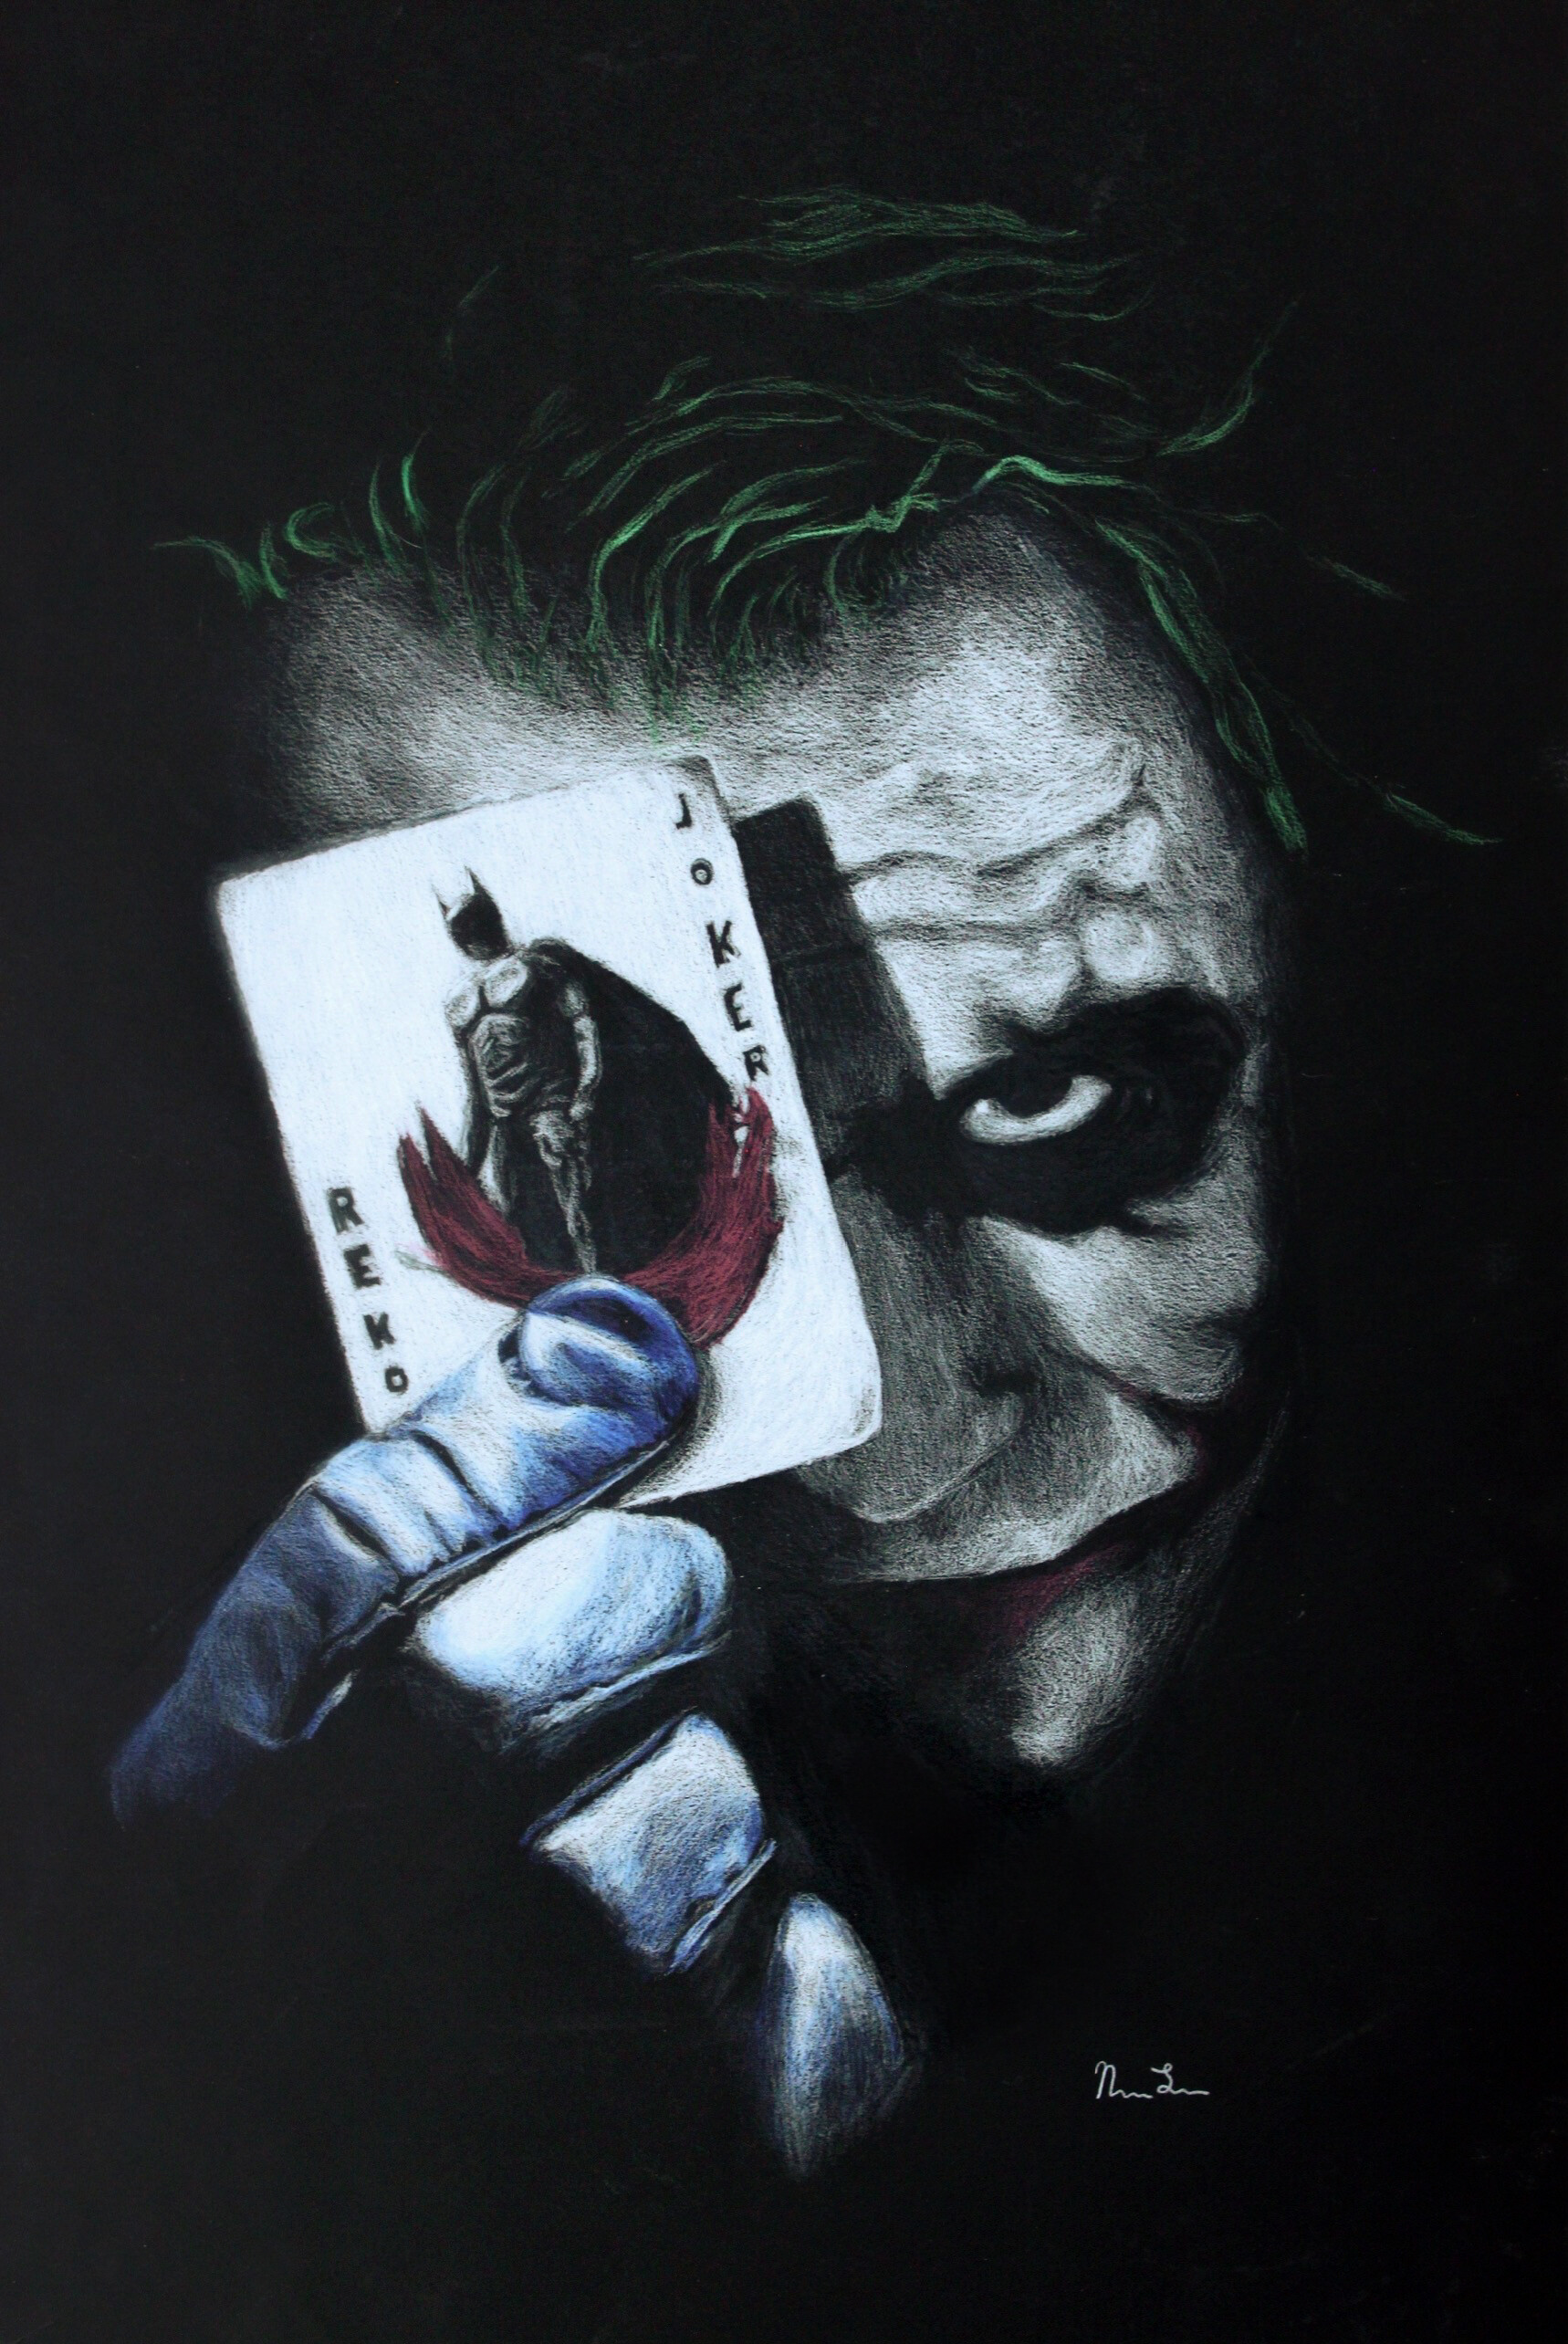 Joker Cartoon Drawing Online Outlet, Save 62% | jlcatj.gob.mx